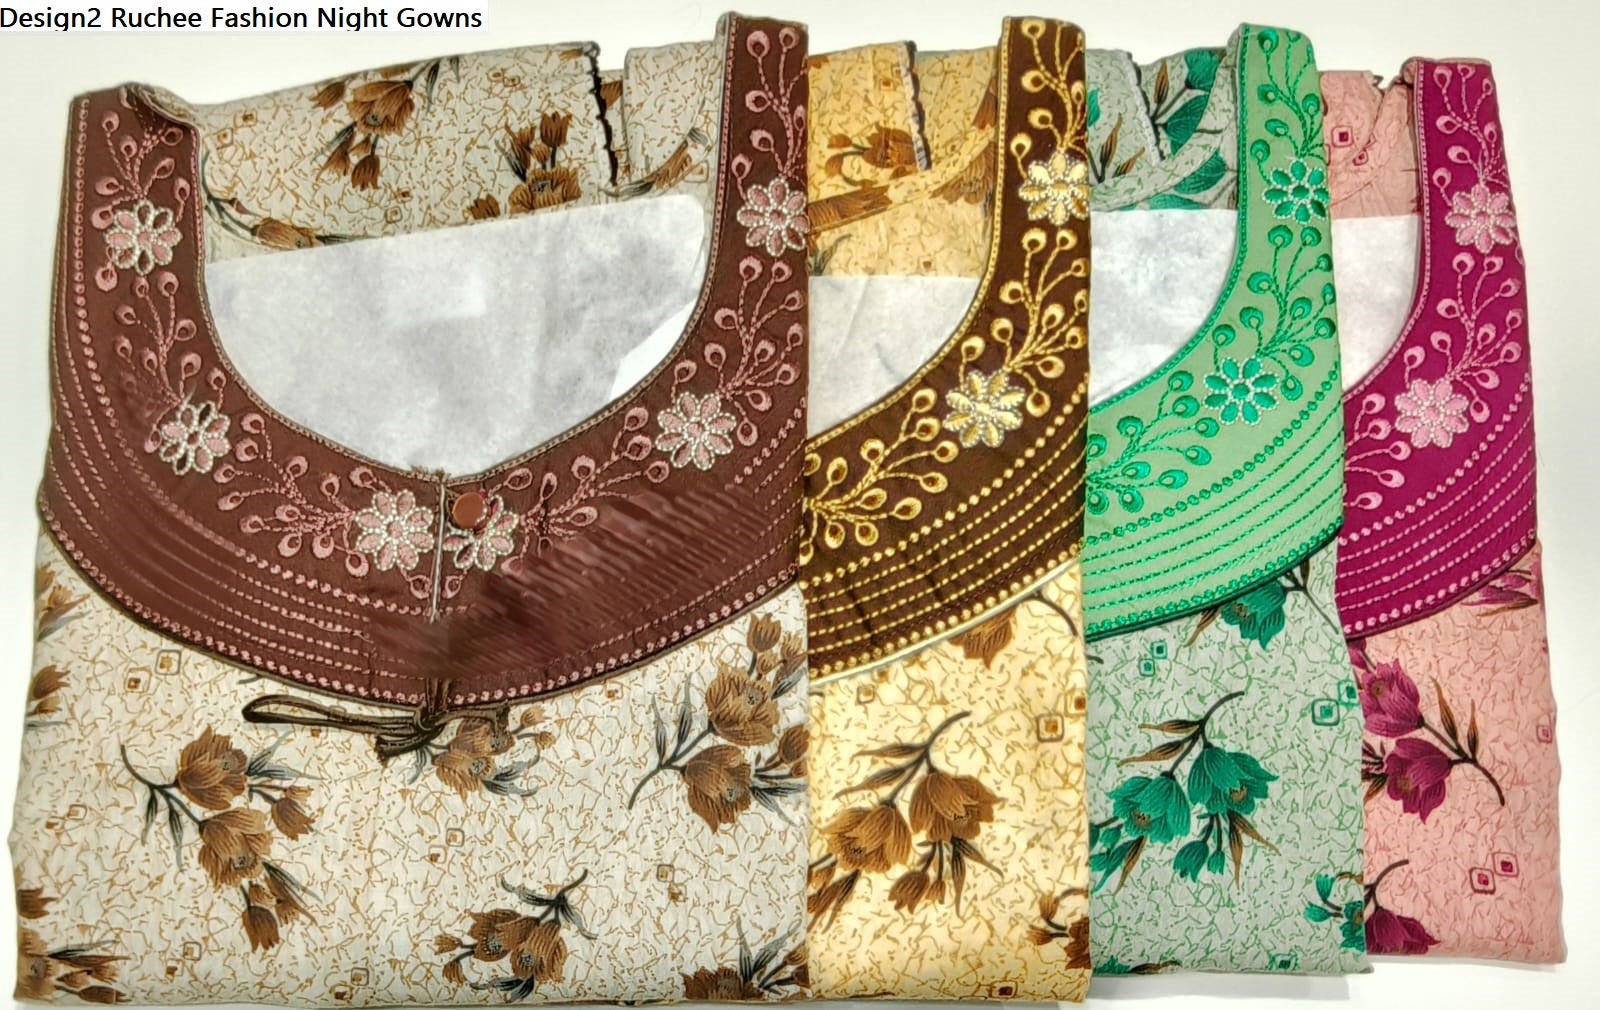 Design2 Ruchee Fashion Crush Night Gowns Supplier Gujarat